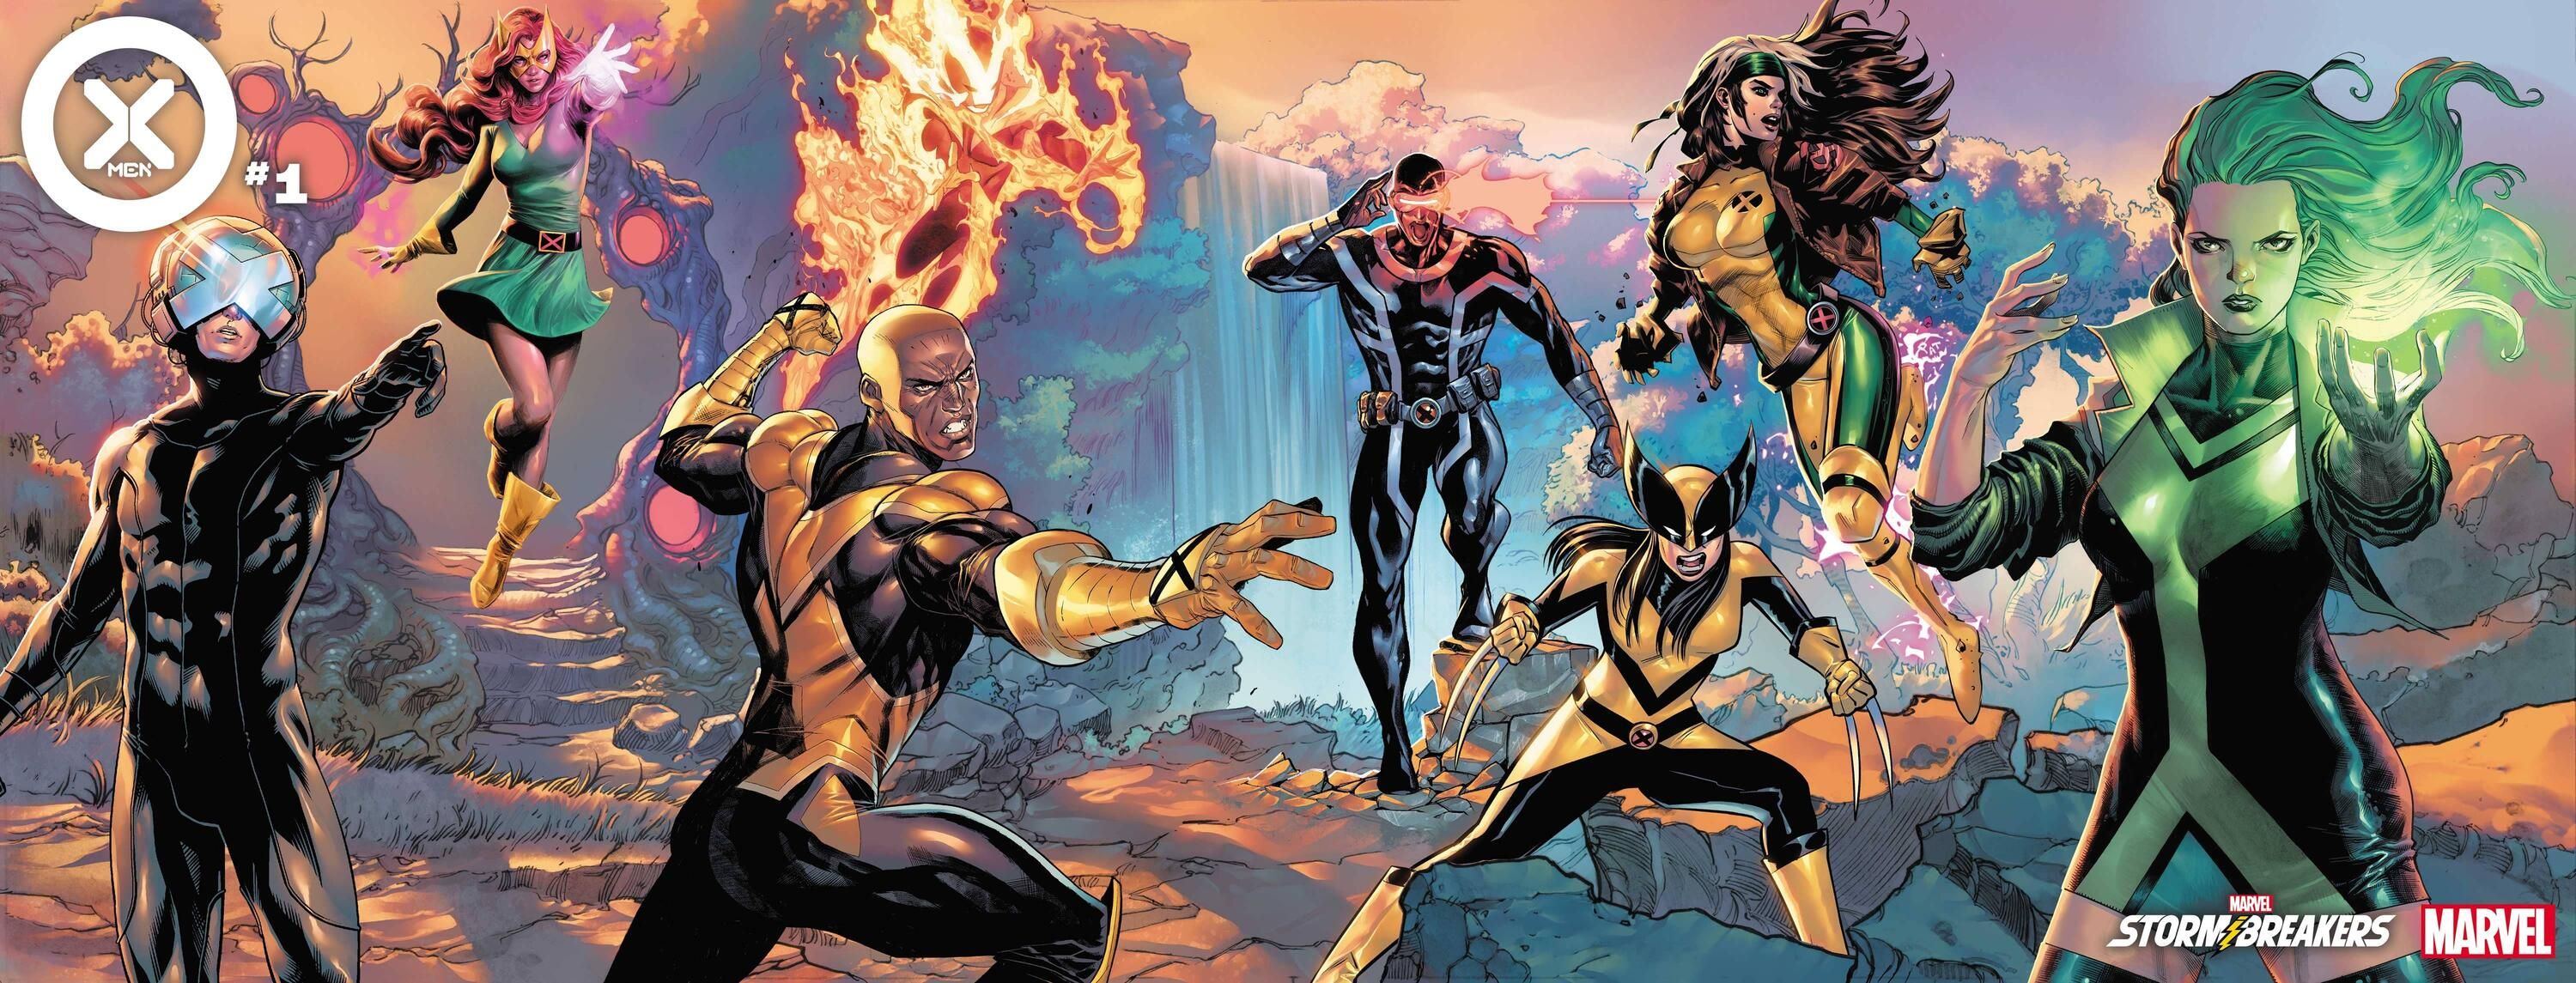 X-Men 1 Stormbreakers Variant